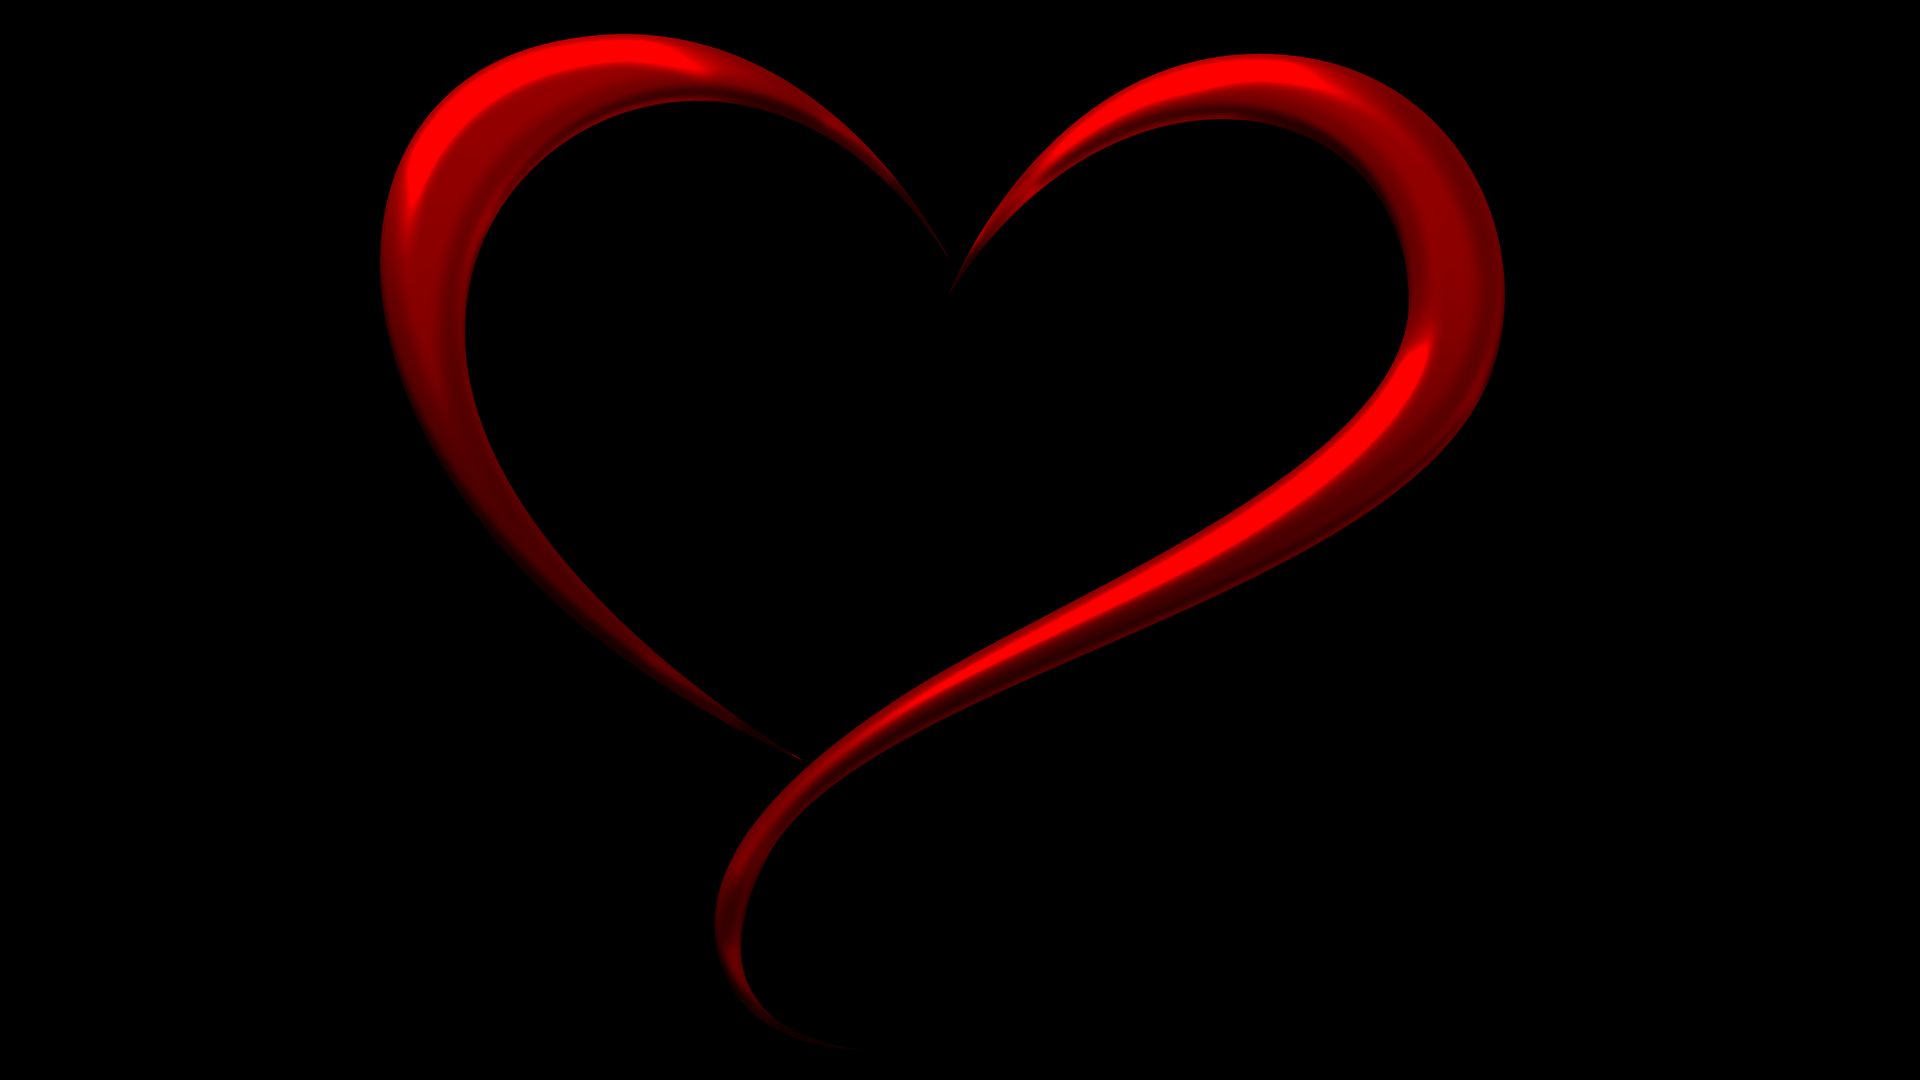 Скачать обои бесплатно Любовь, Красный, Сердце, Чёрный, Простой, Художественные, Минималистский картинка на рабочий стол ПК